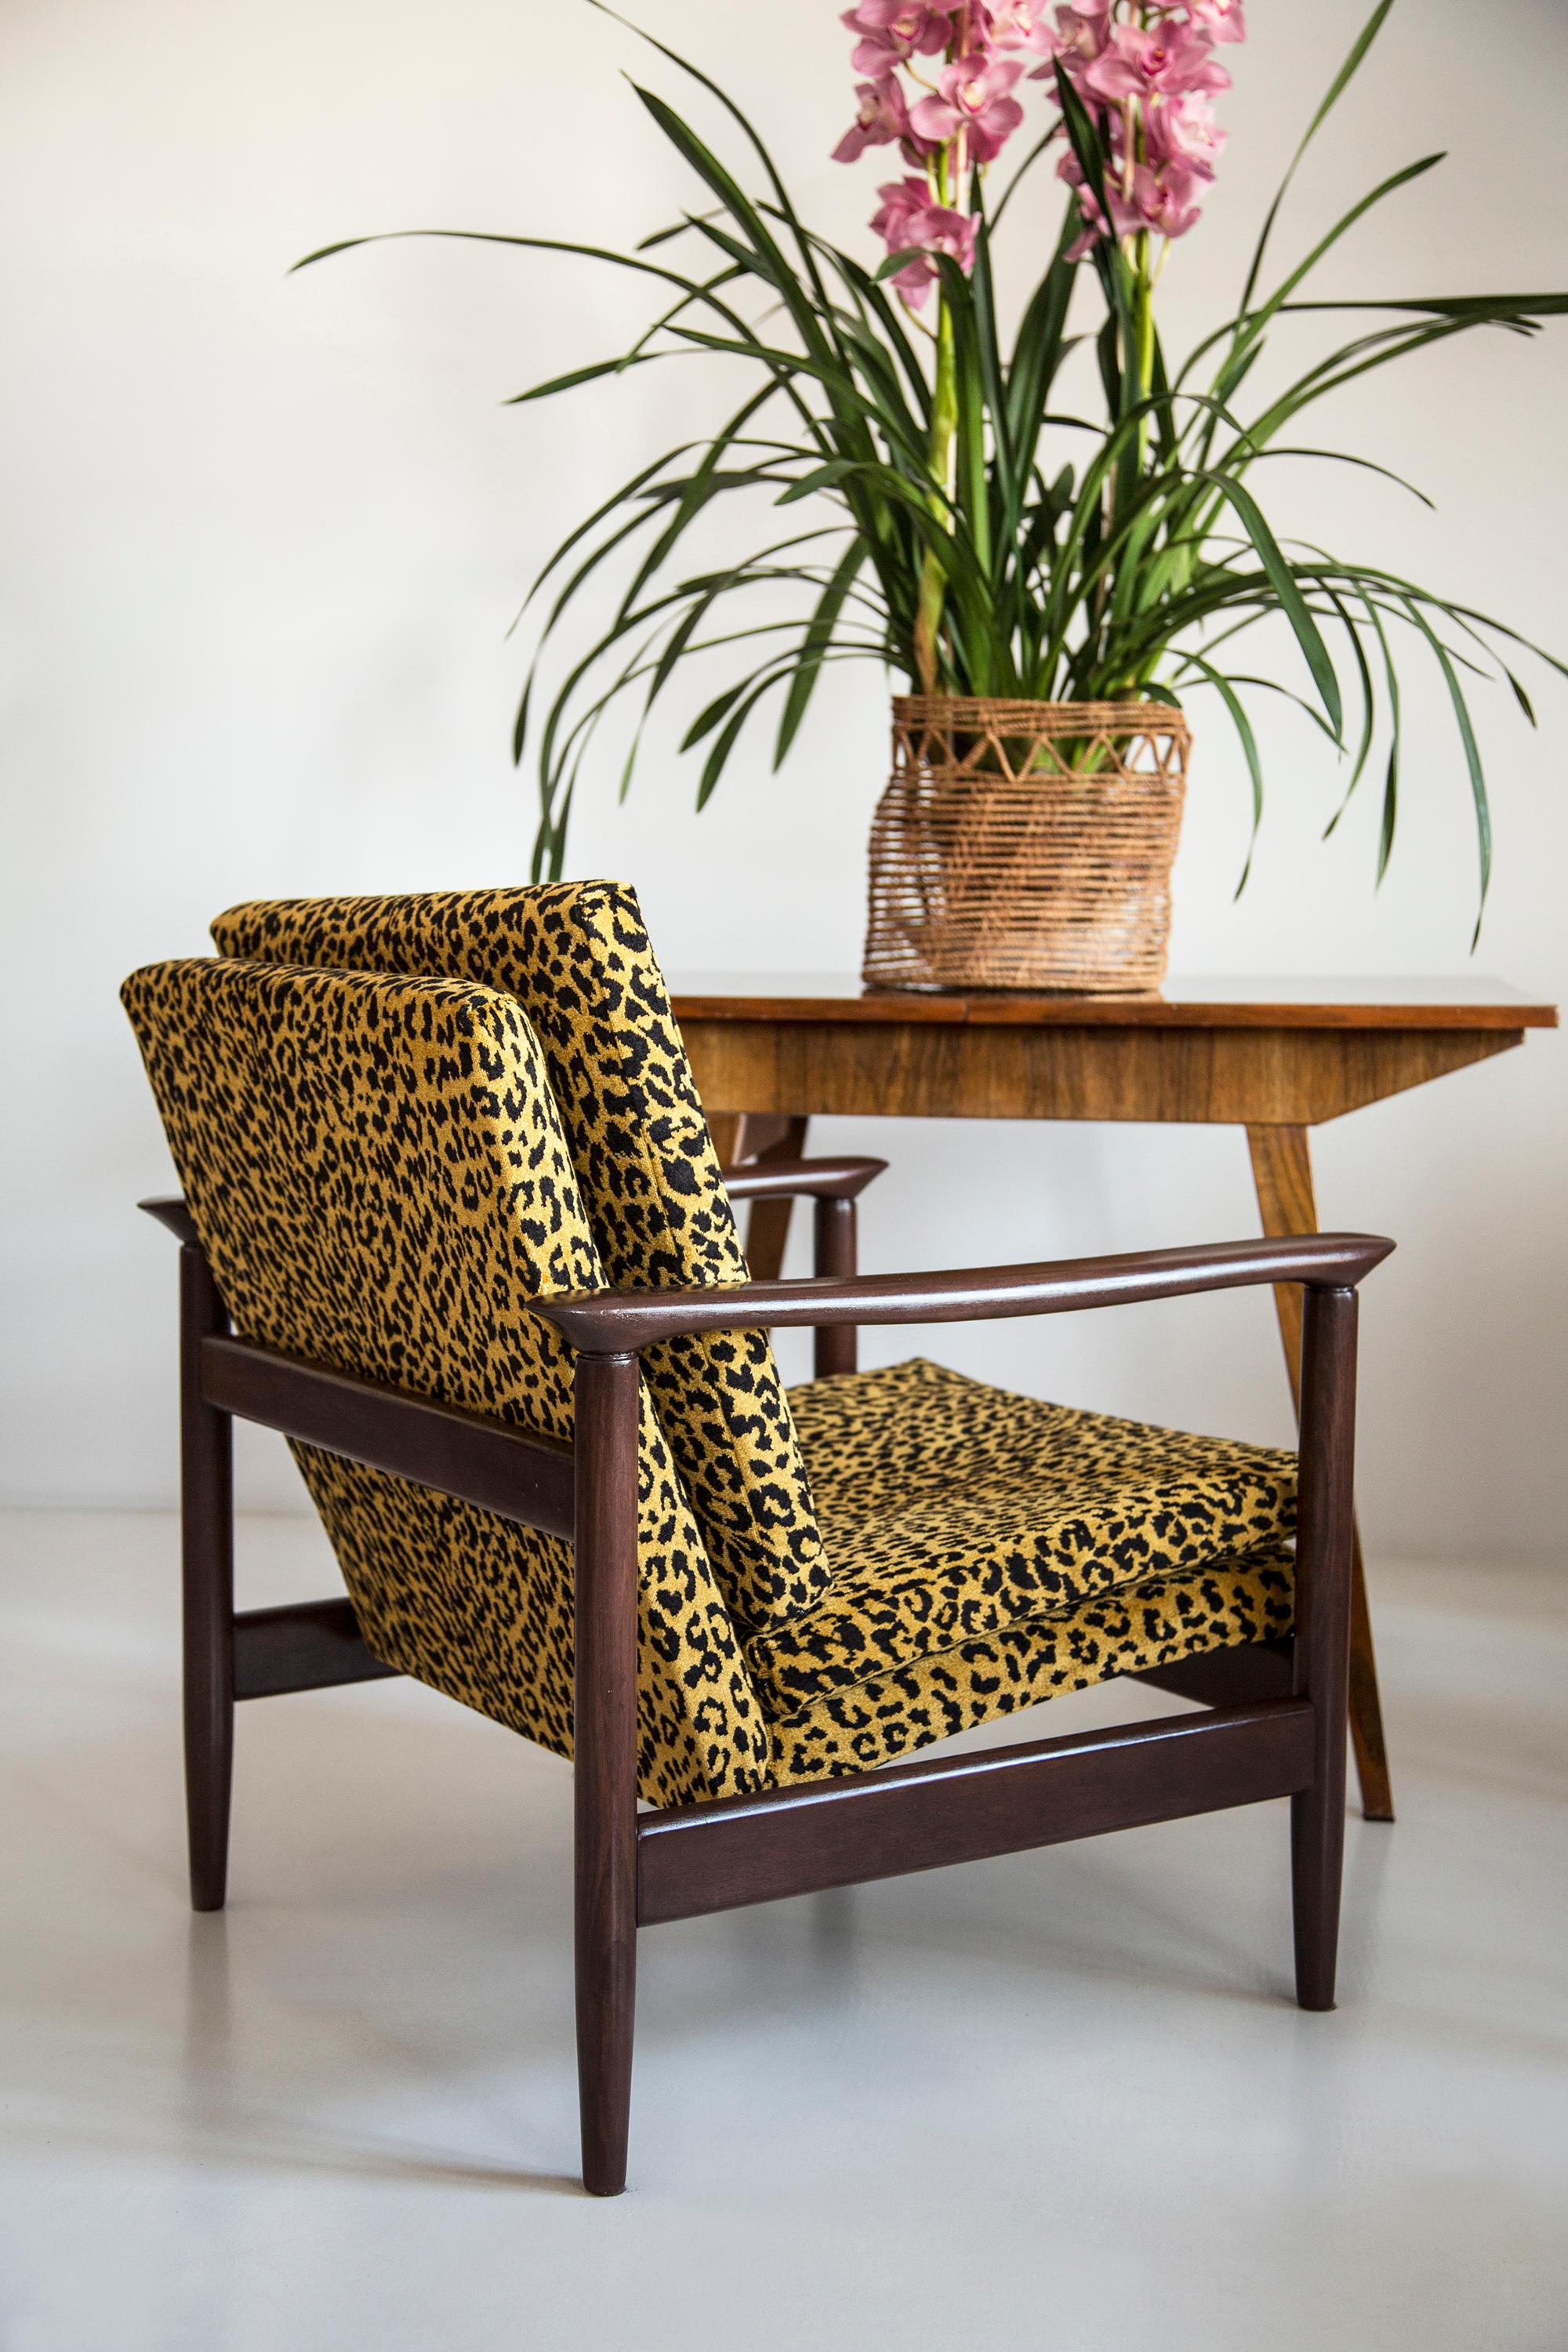 Wunderschöner Leoparden-Sessel GFM-142, entworfen von Edmund Homa, einem polnischen Architekten, Designer von Industriedesign und Innenarchitektur, Professor an der Akademie der Schönen Künste in Danzig. 

Der Sessel wurde in den 1960er Jahren in